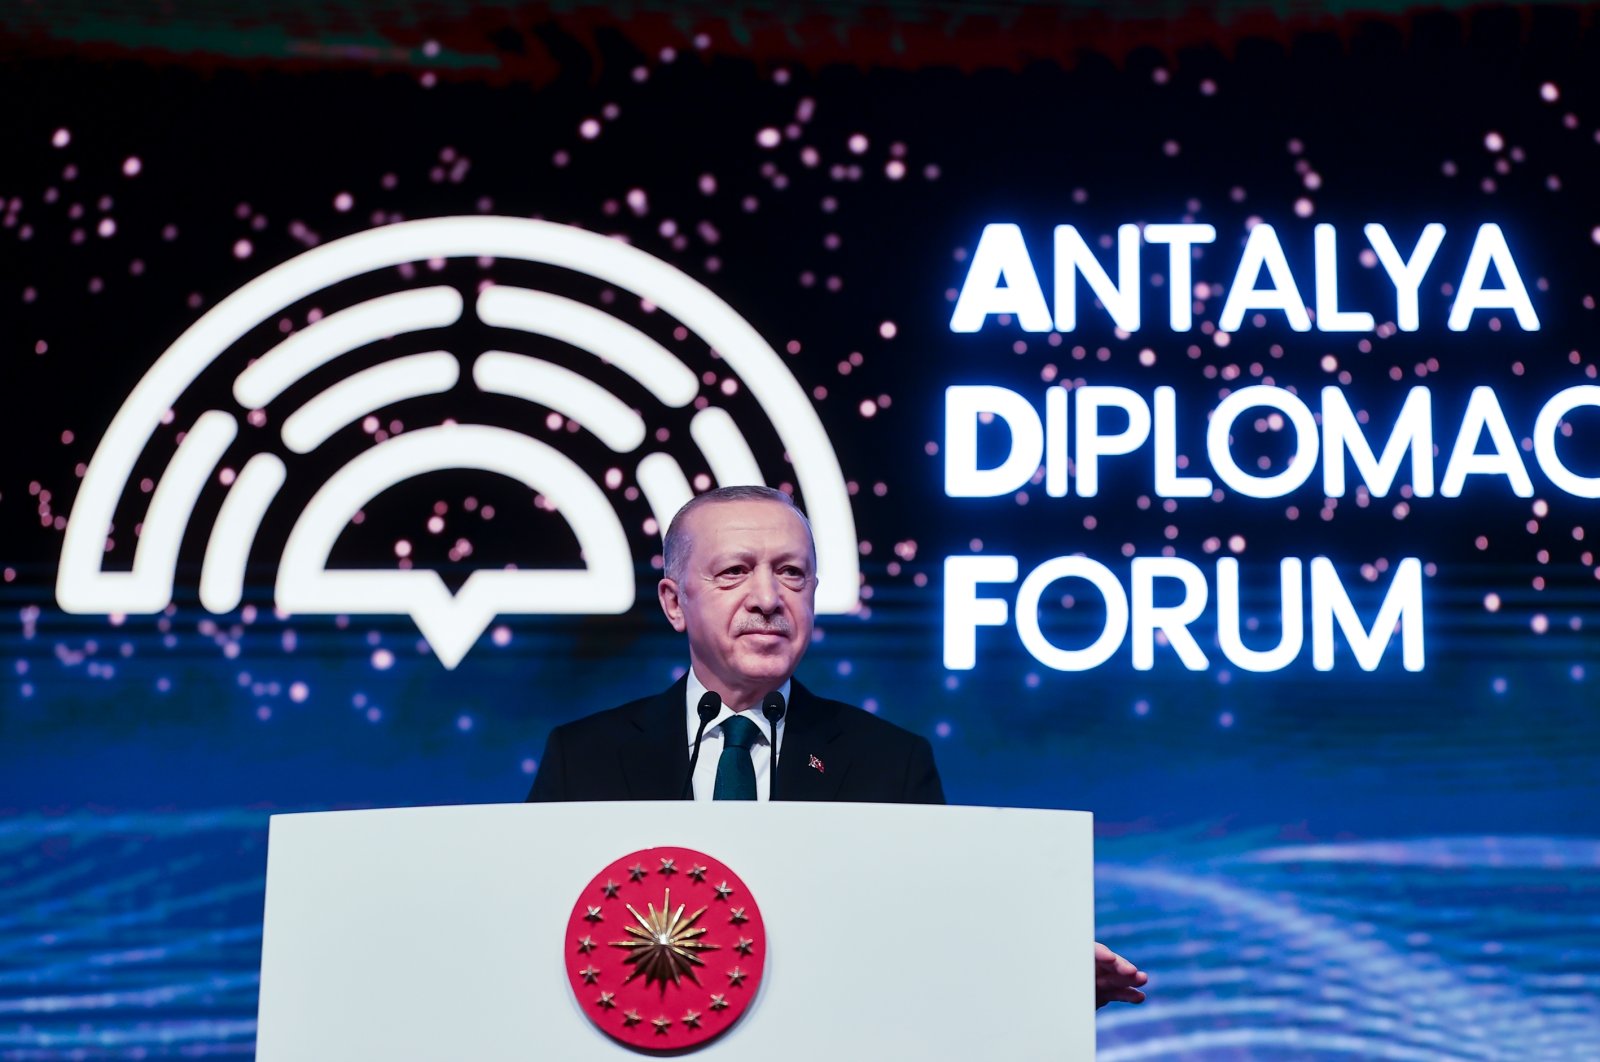 Kita perlu menempatkan diplomasi demi perdamaian, pembangunan, kata Turki